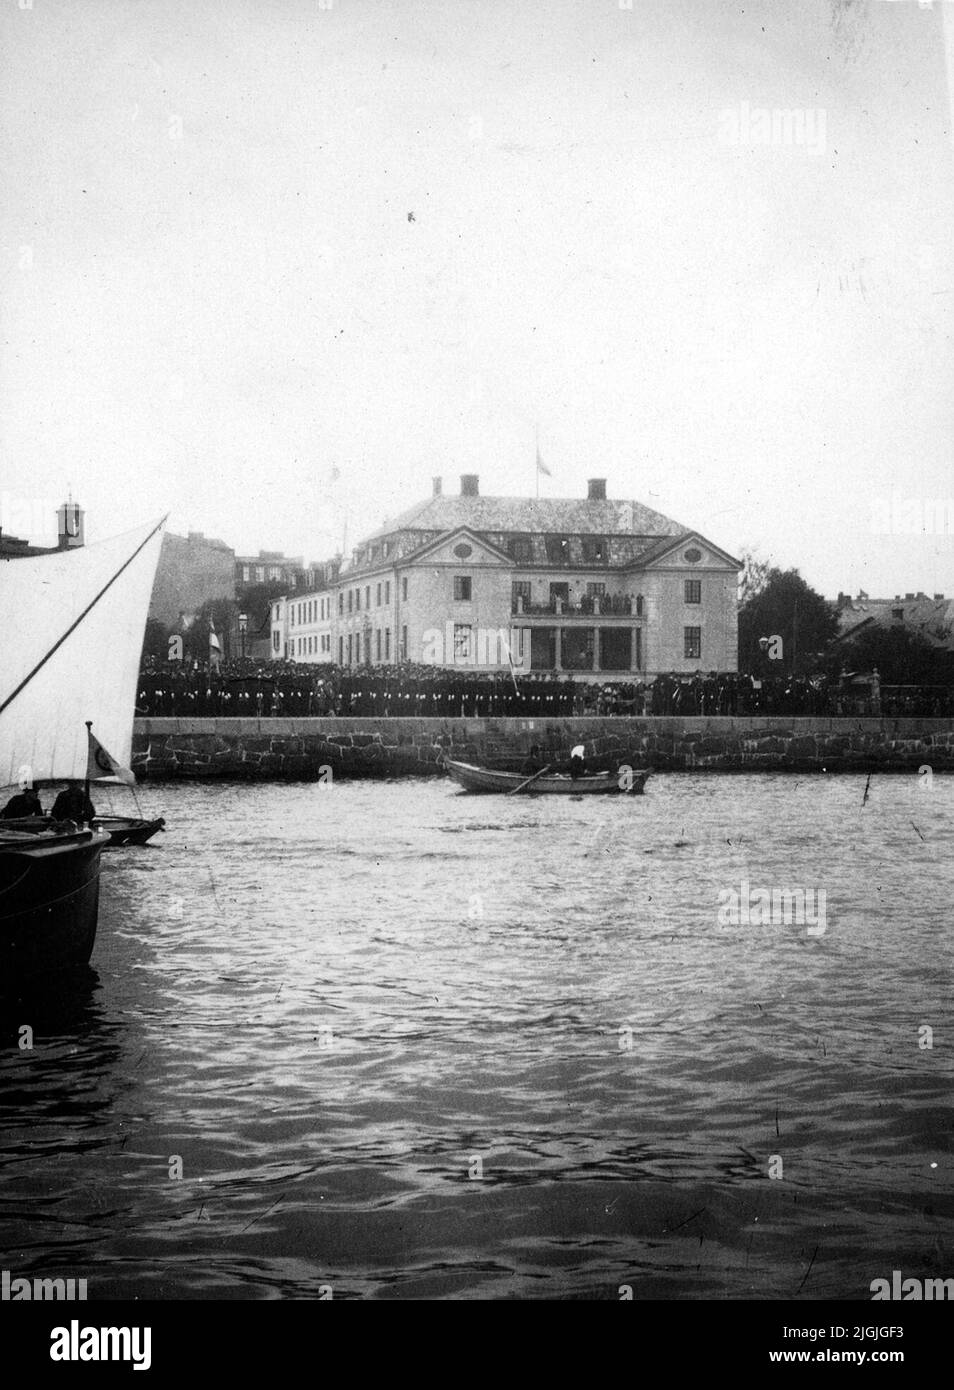 La collezione pubblica a Kungsbron a Karlskrona in connessione con la barca cannone Svensksund arriva il 30 settembre 1930. A bordo si trovano i resti dei tre pollatori Salomon August Andrée, Knut Fraenkel e Nils Strindberg, scomparsi da quando la spedizione Andrée scomparve nel 1897 e rinvenuta a Vitön nell'estate del 1930. La sosta a Karlskrona continuò a Svensksund fino a Stoccolma dove si svolse il funerale solenne. Foto Stock